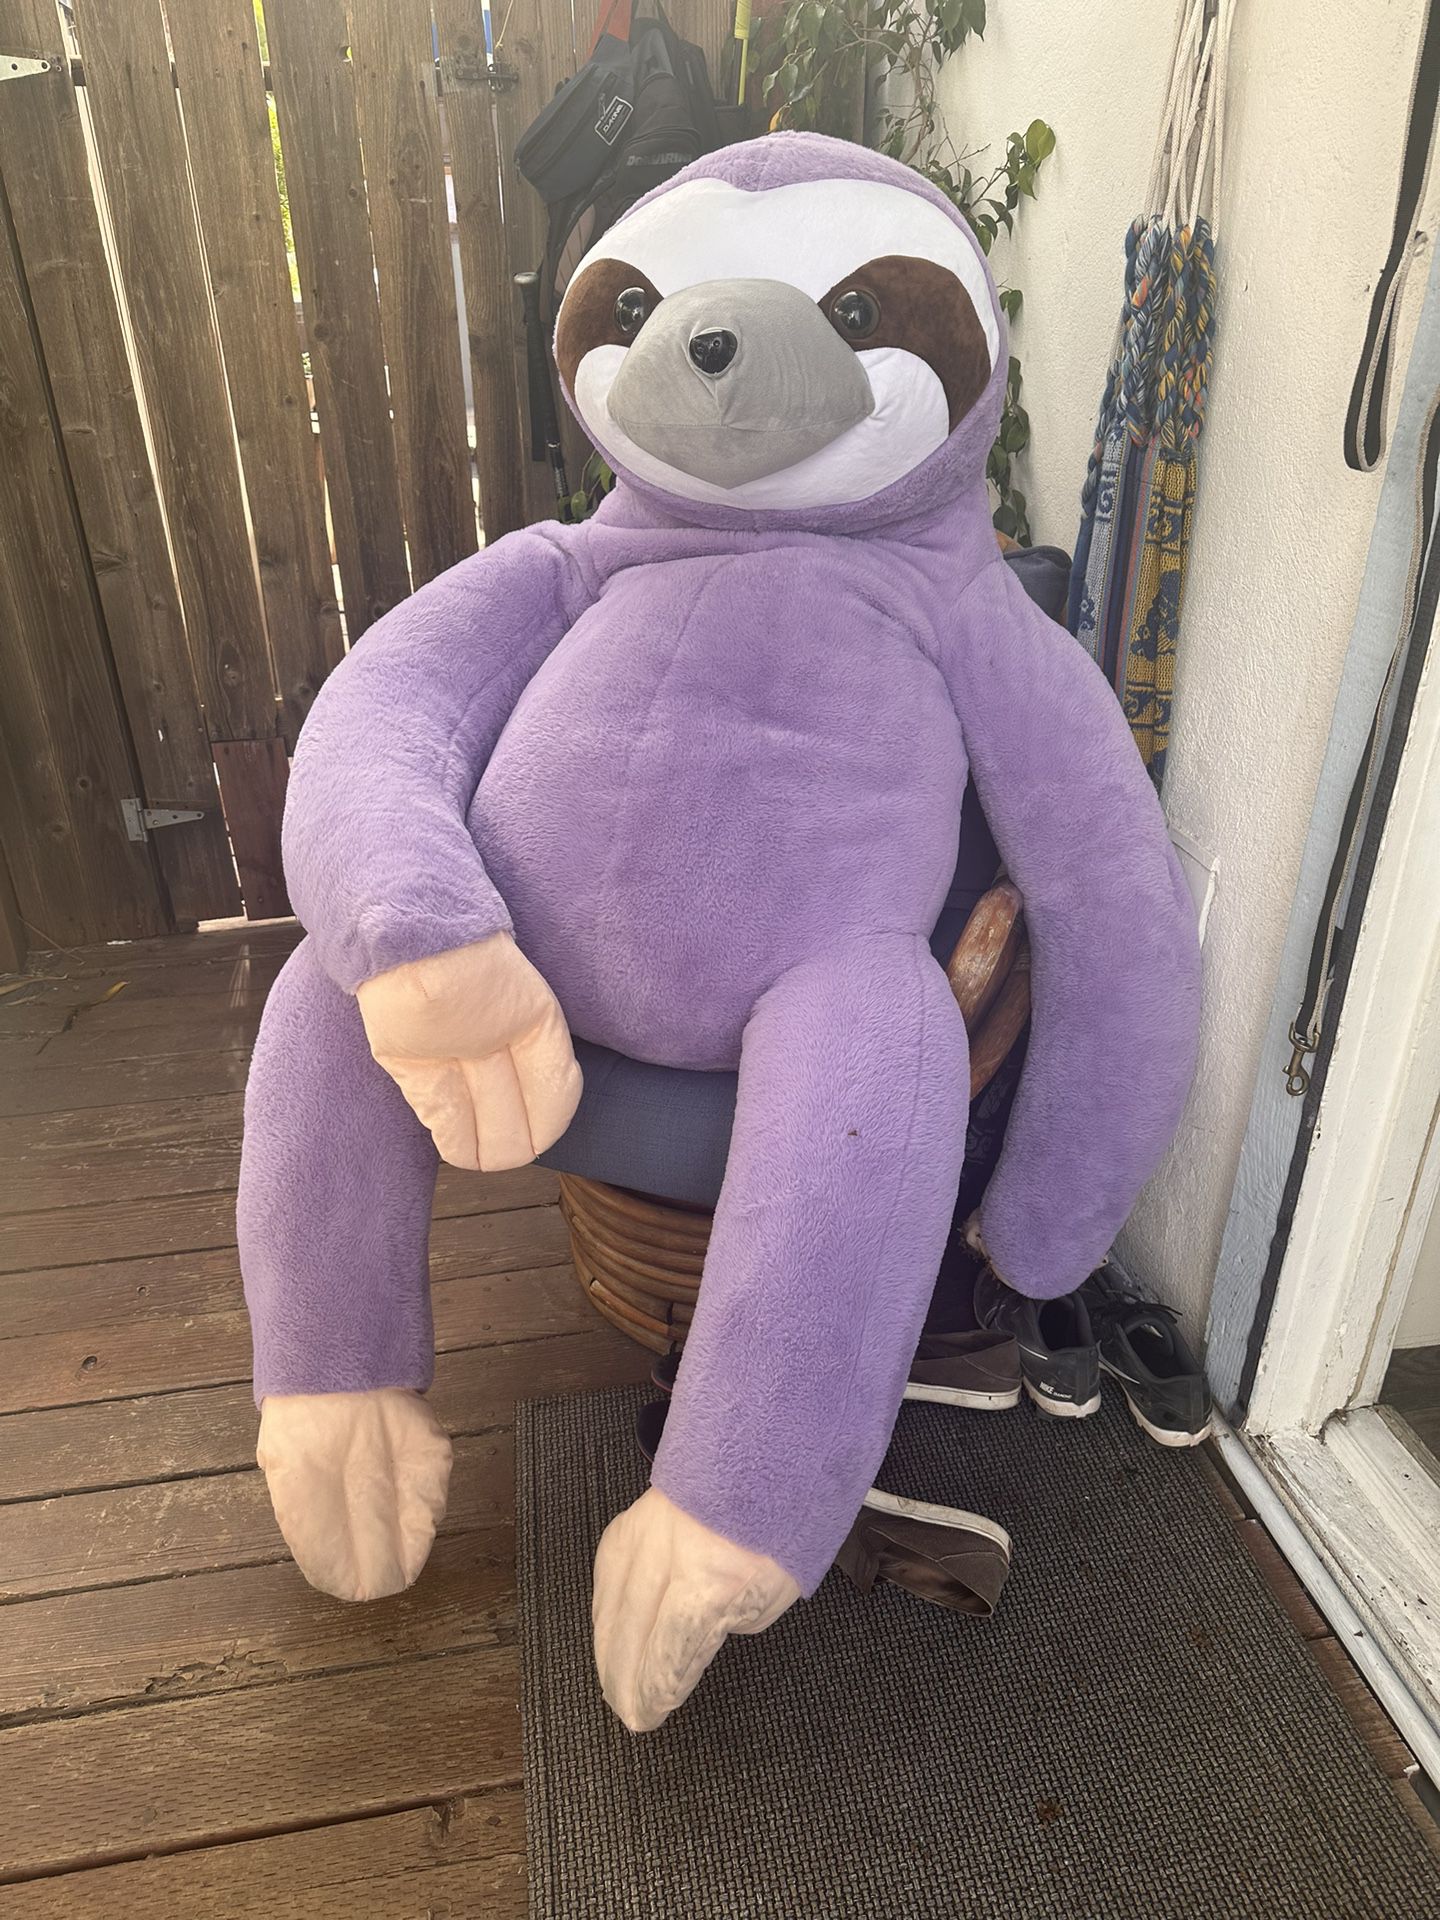 Giant Stuffed Animal Purple Sloth 5’6”!